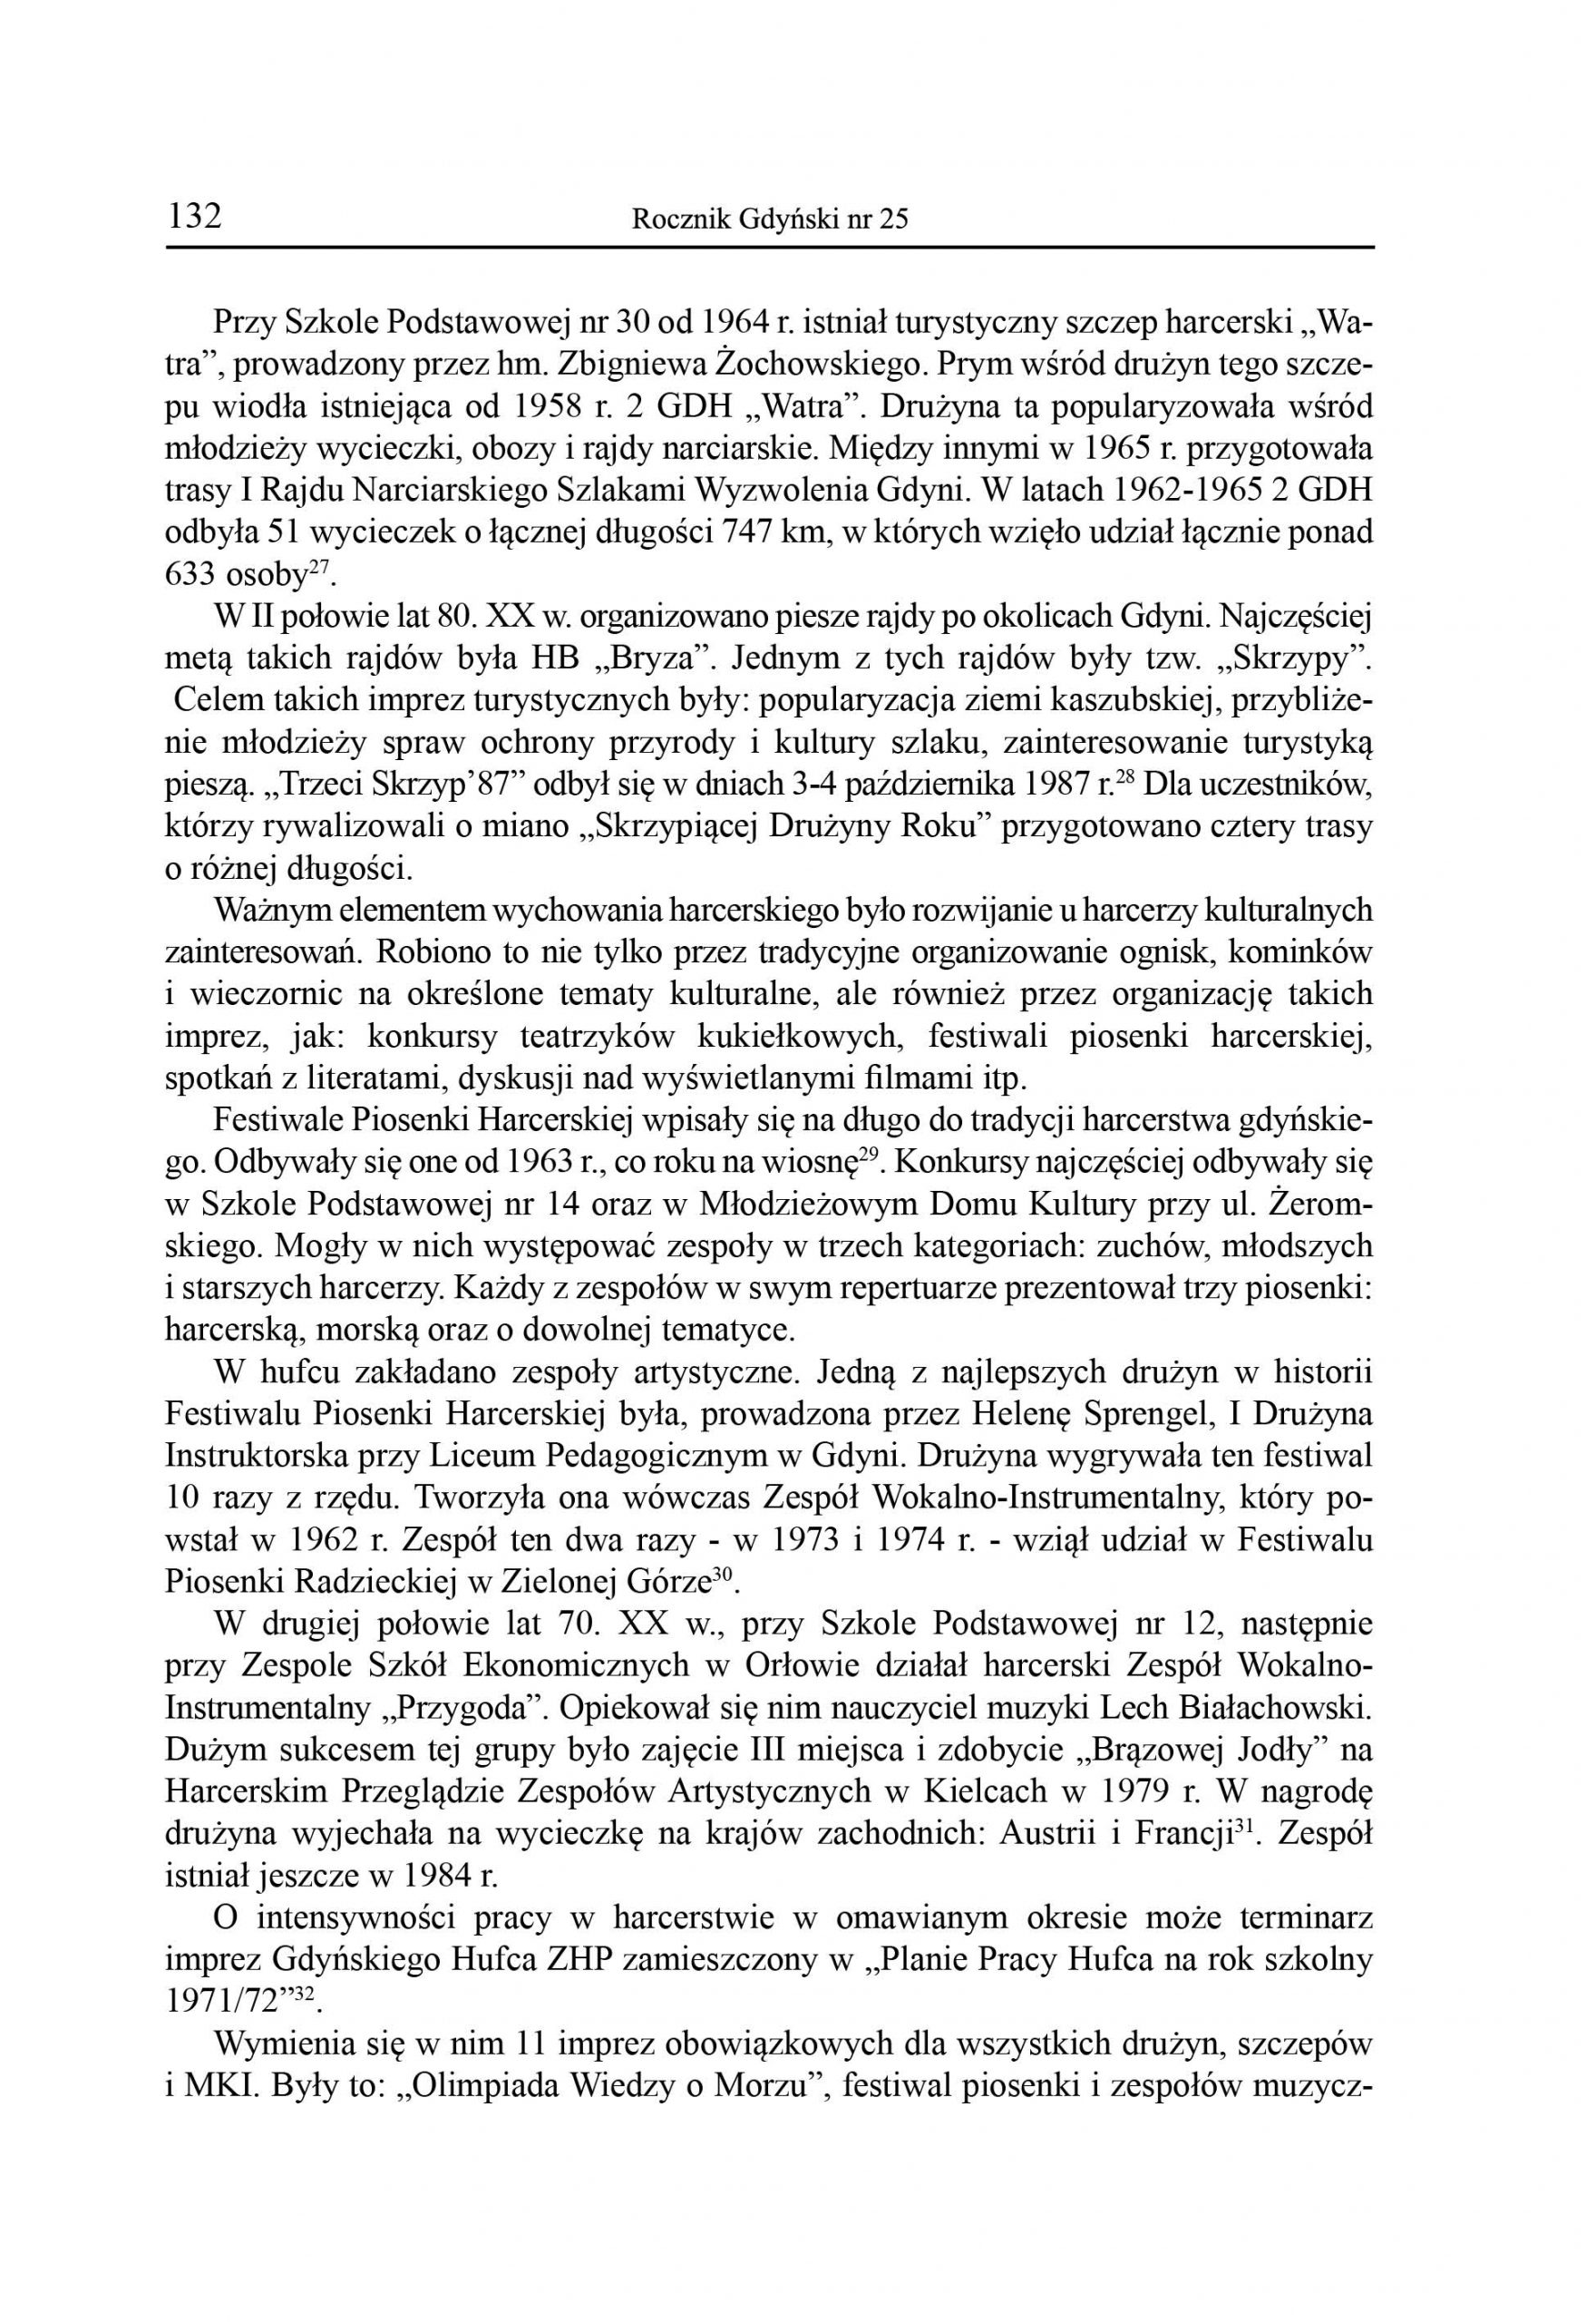 Formy działalności harcerstwa gdyńskiego w latach 1945-1989